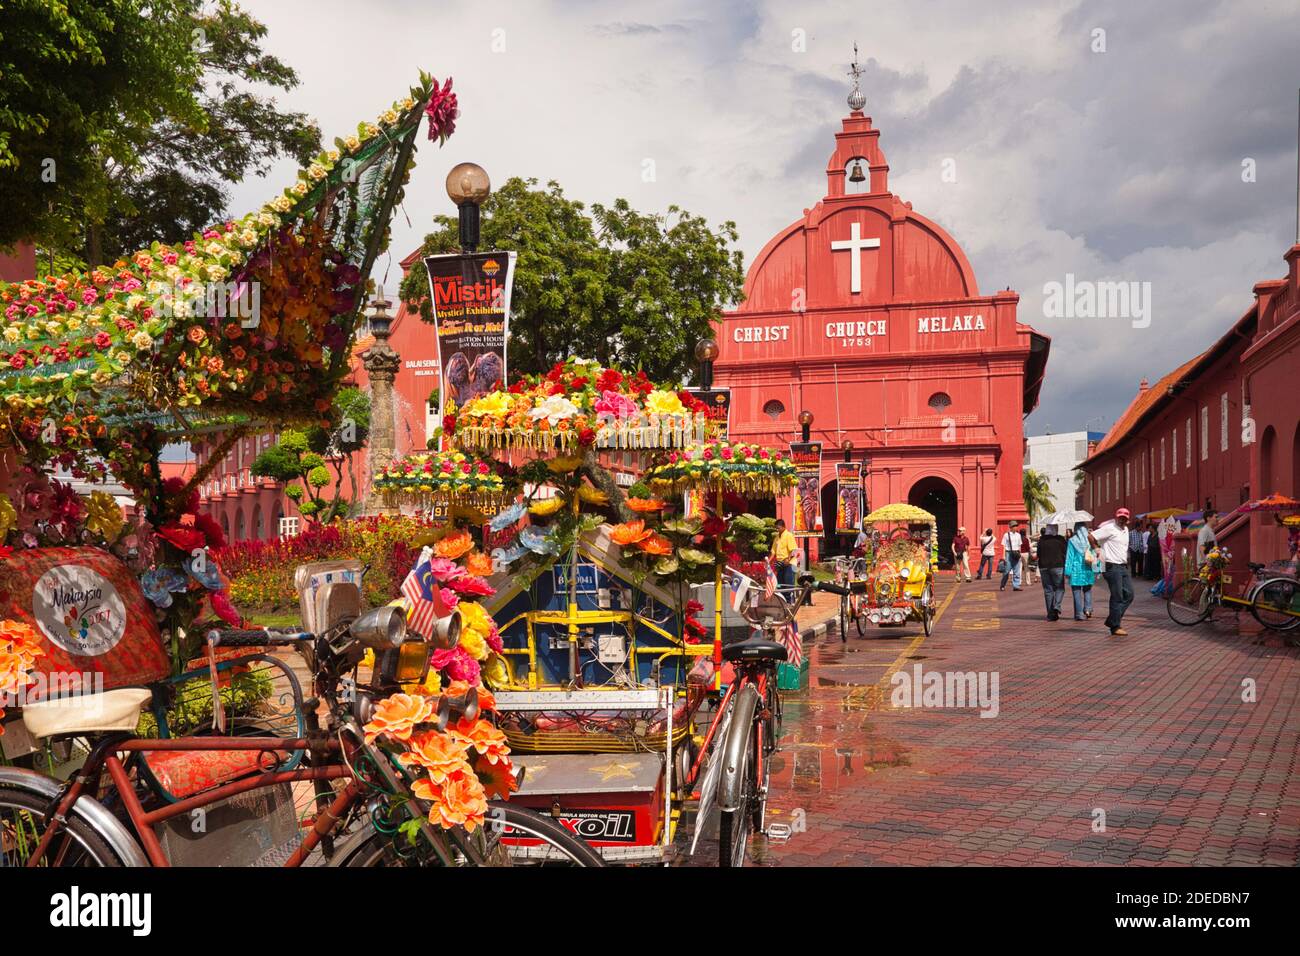 La chiesa principale di Malacca con colorati pedalò decorativi sulla strada di fronte. Malacca, Malesia Foto Stock